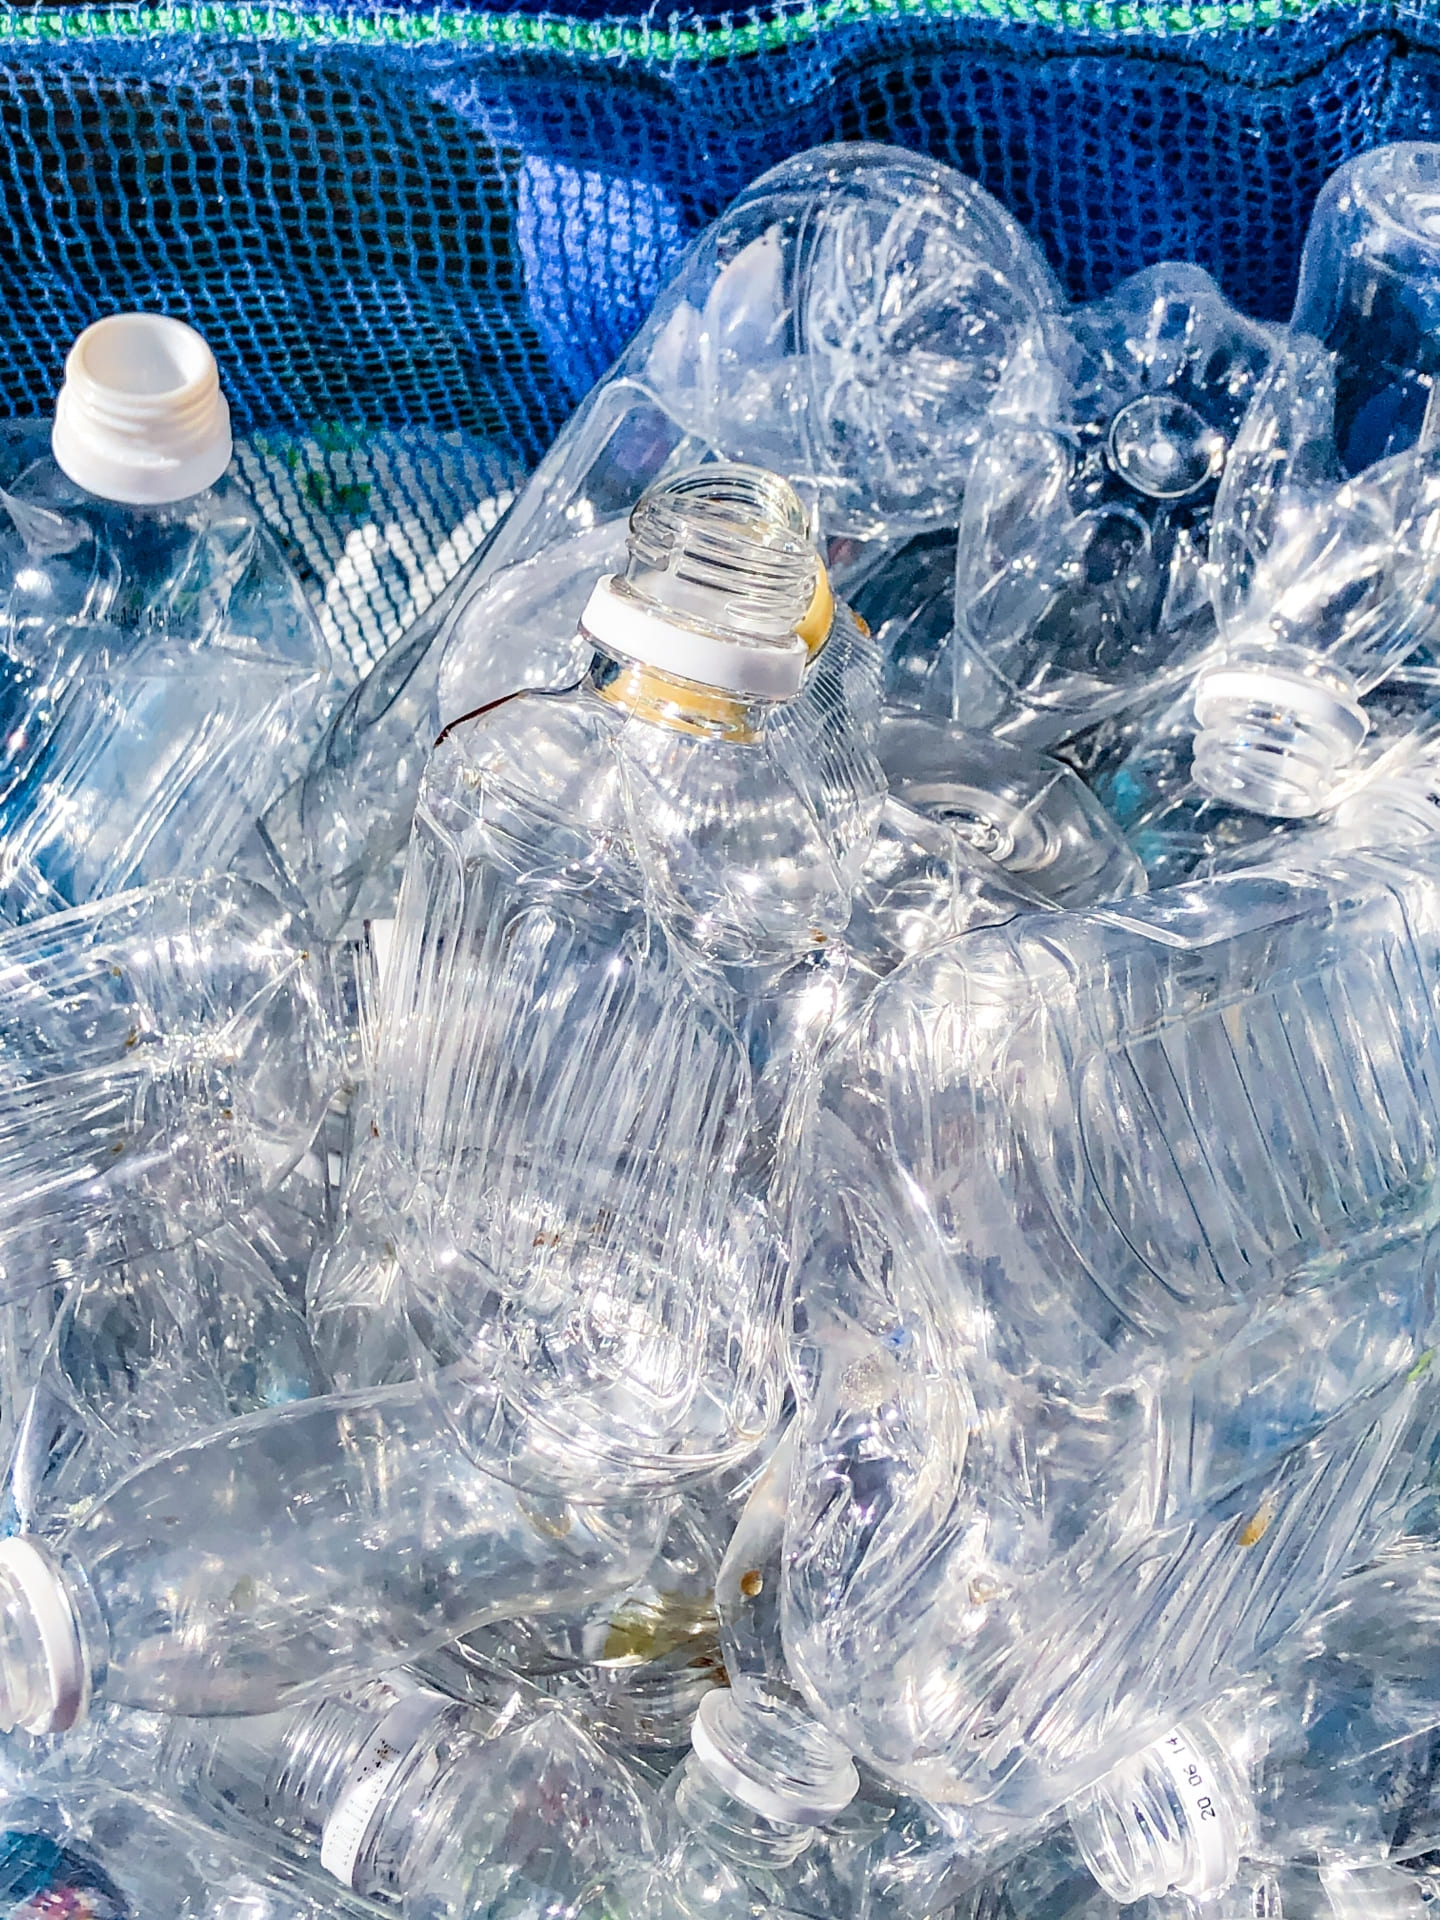 プラスチックゴミの現状